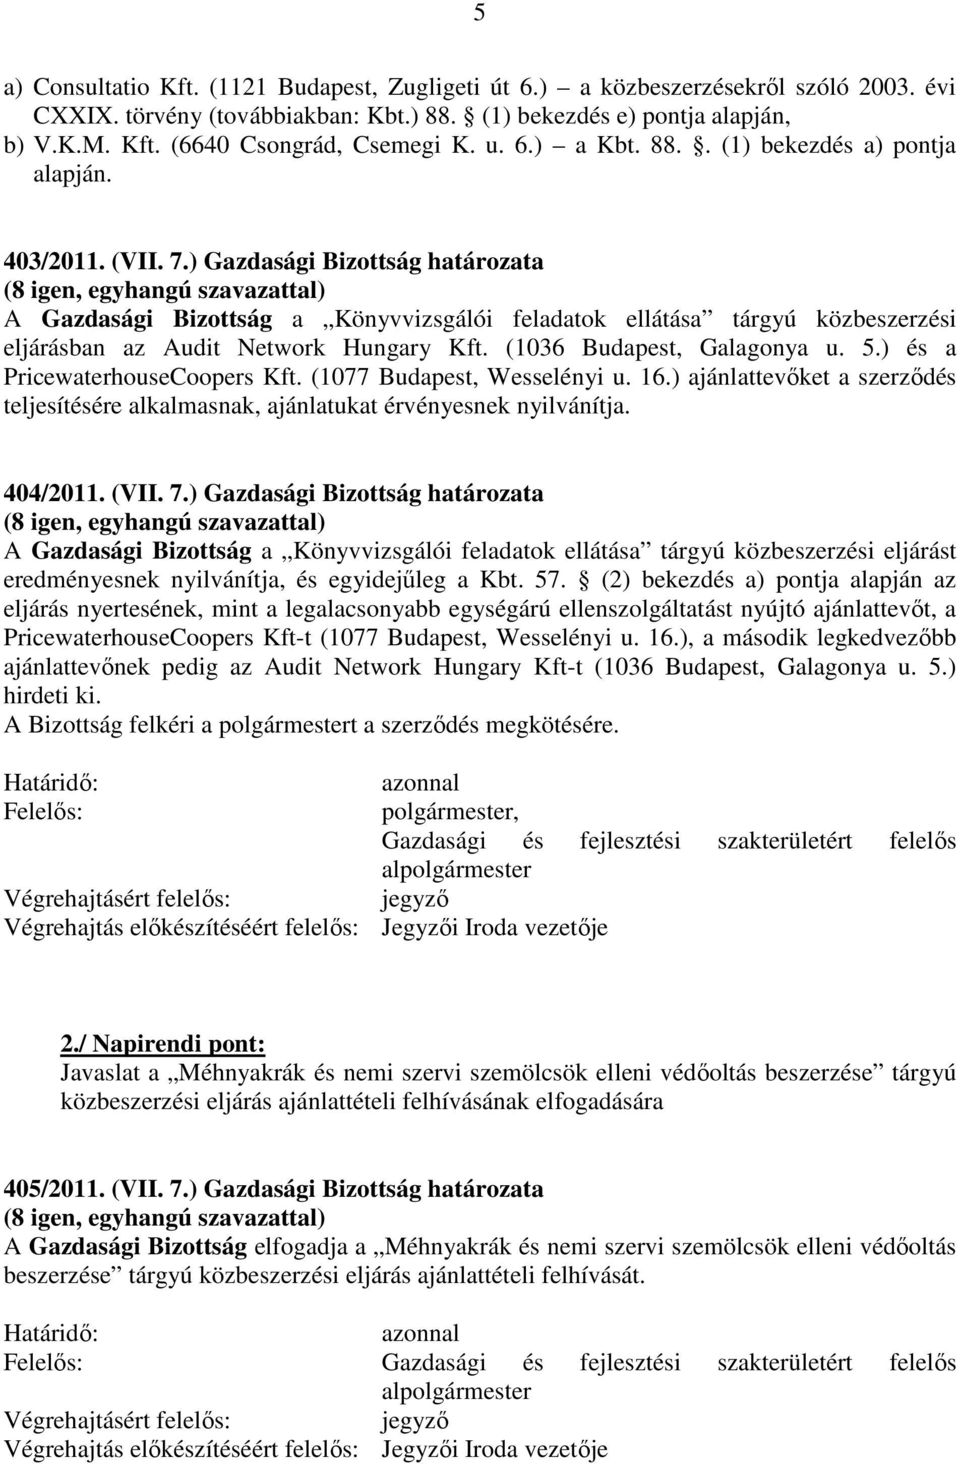 ) Gazdasági Bizottság határozata A Gazdasági Bizottság a Könyvvizsgálói feladatok ellátása tárgyú közbeszerzési eljárásban az Audit Network Hungary Kft. (1036 Budapest, Galagonya u. 5.